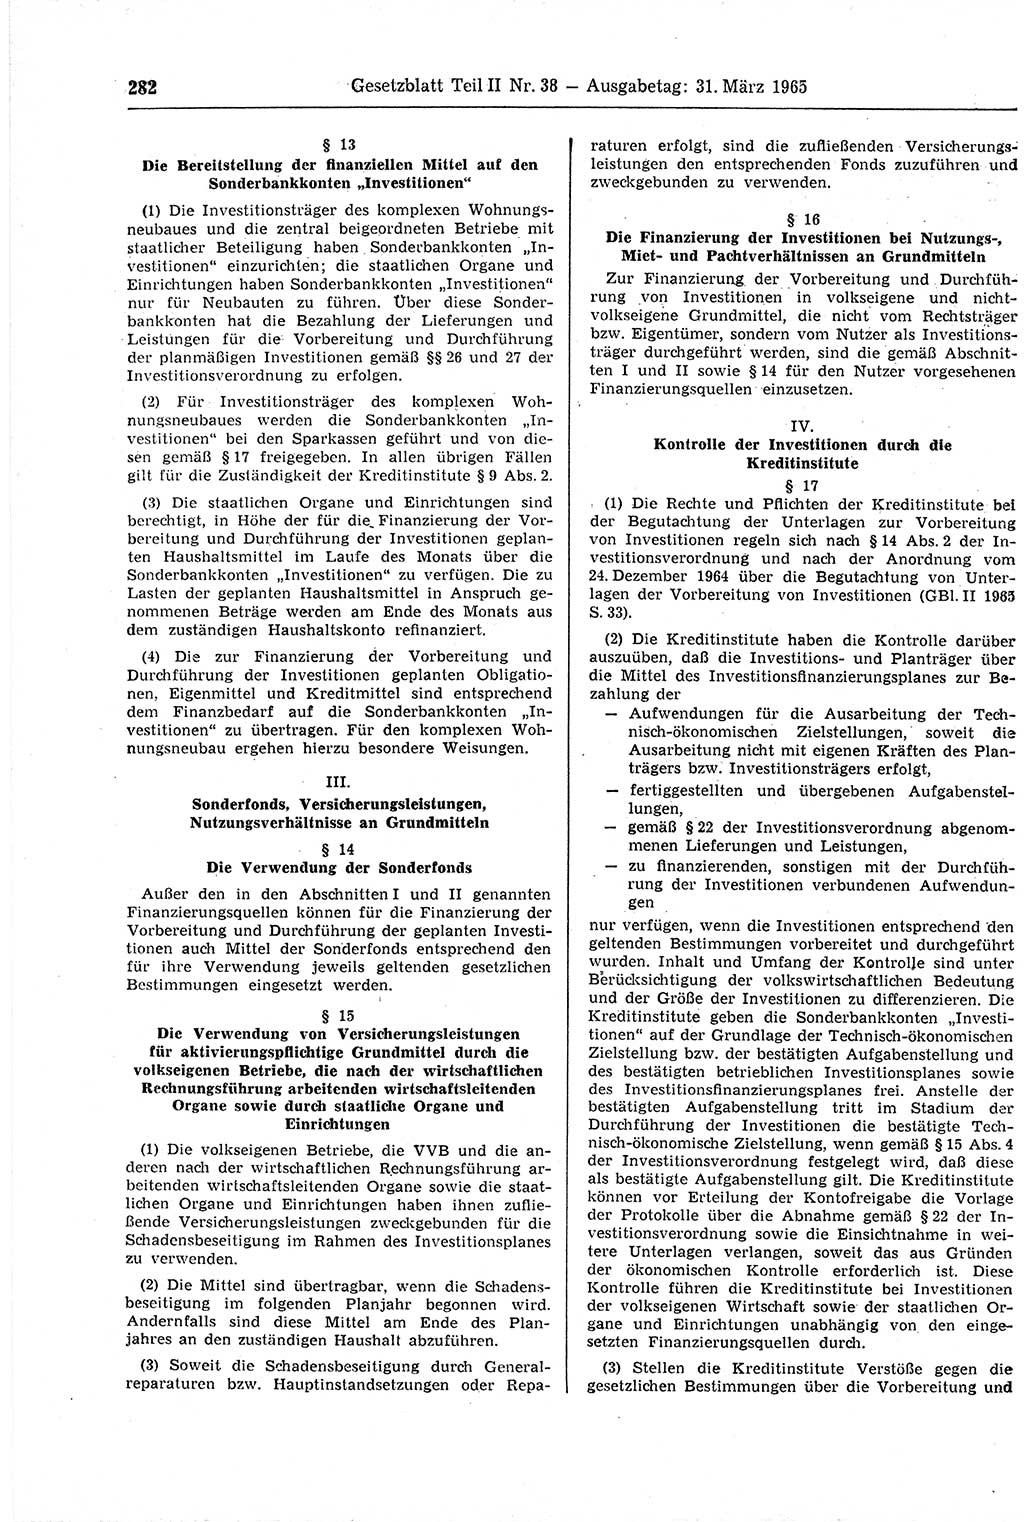 Gesetzblatt (GBl.) der Deutschen Demokratischen Republik (DDR) Teil ⅠⅠ 1965, Seite 282 (GBl. DDR ⅠⅠ 1965, S. 282)